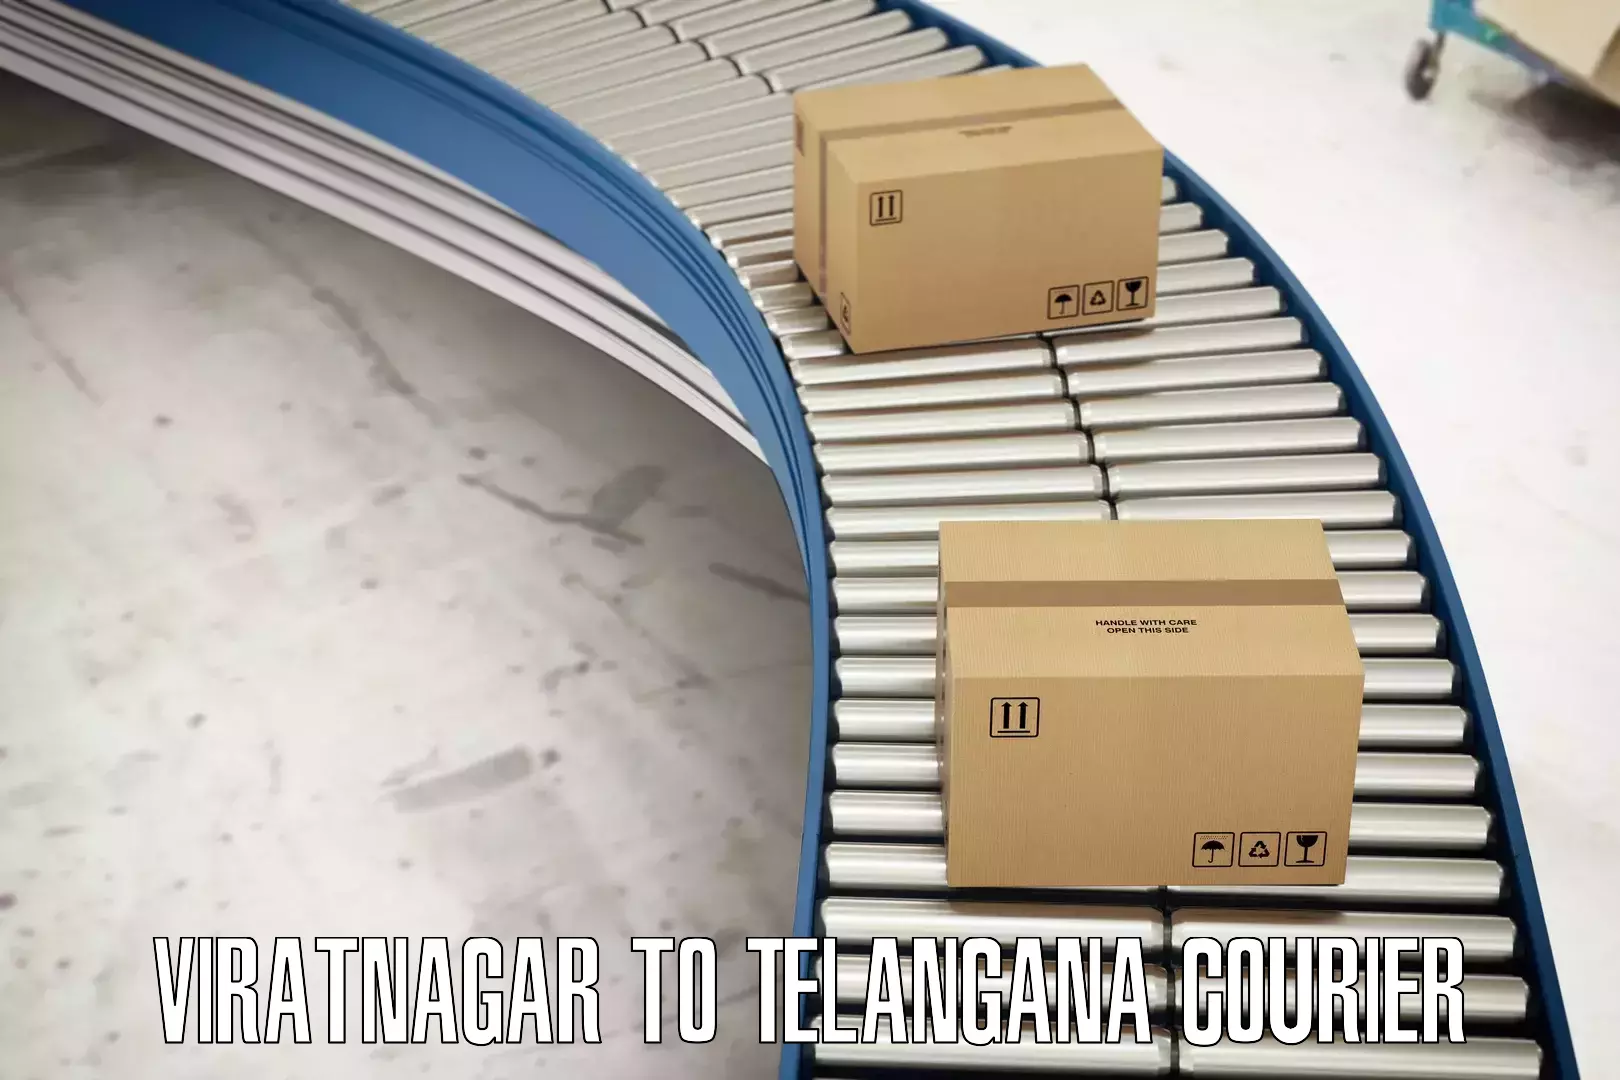 High-performance logistics Viratnagar to Telangana